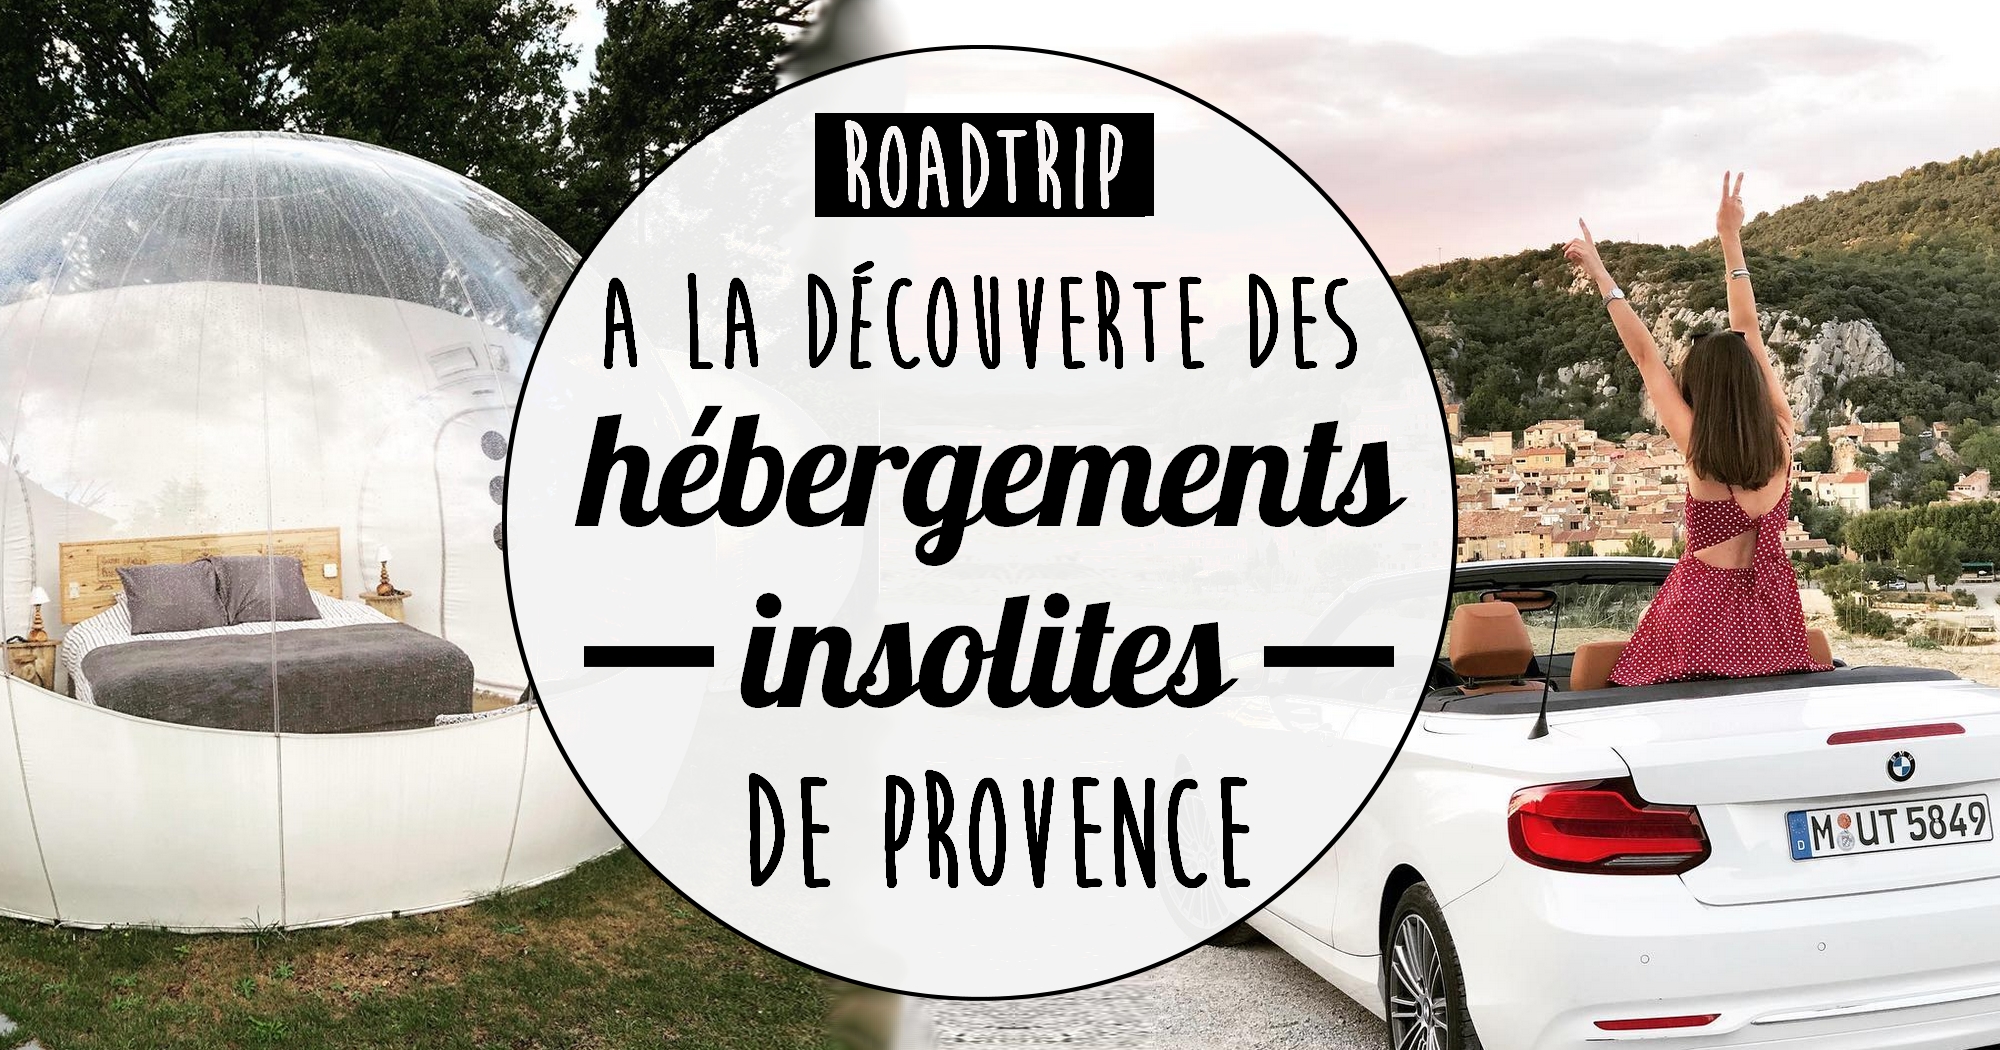 Roadtrip : à la découverte des hébergements insolites de Provence